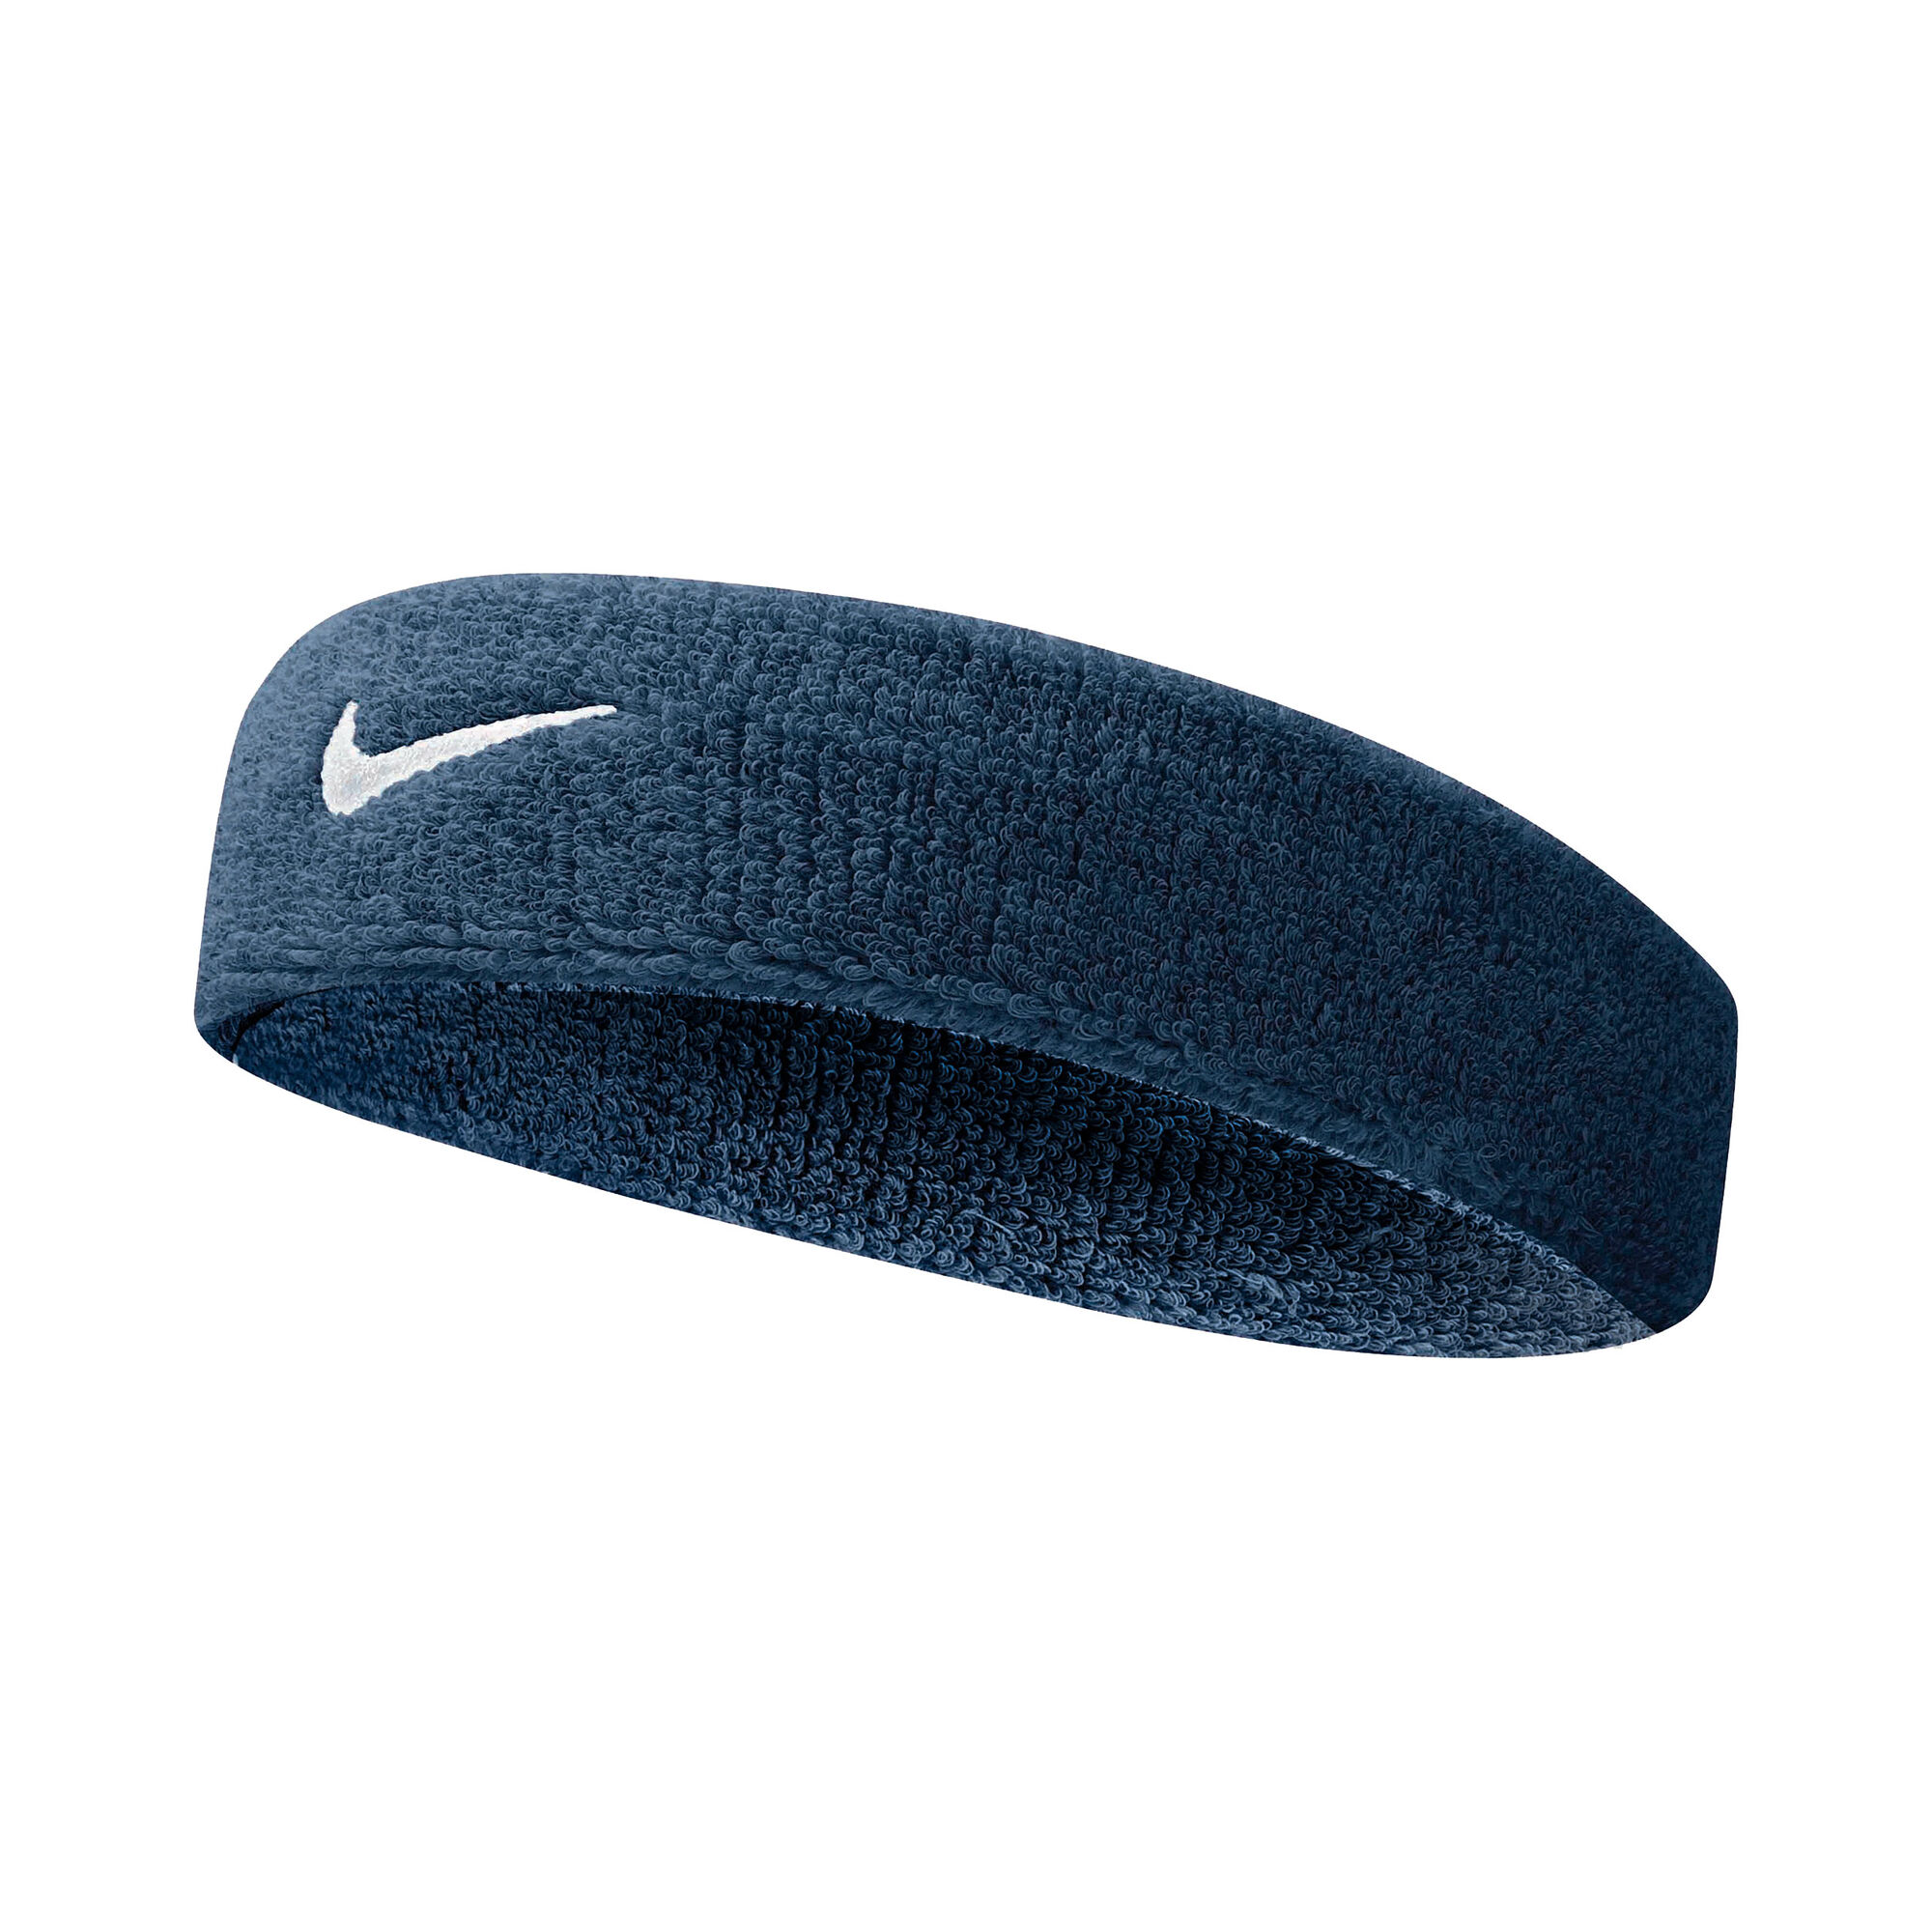 Nike Swoosh Stirnband Dunkelblau, Weiß online kaufen | Tennis Point DE